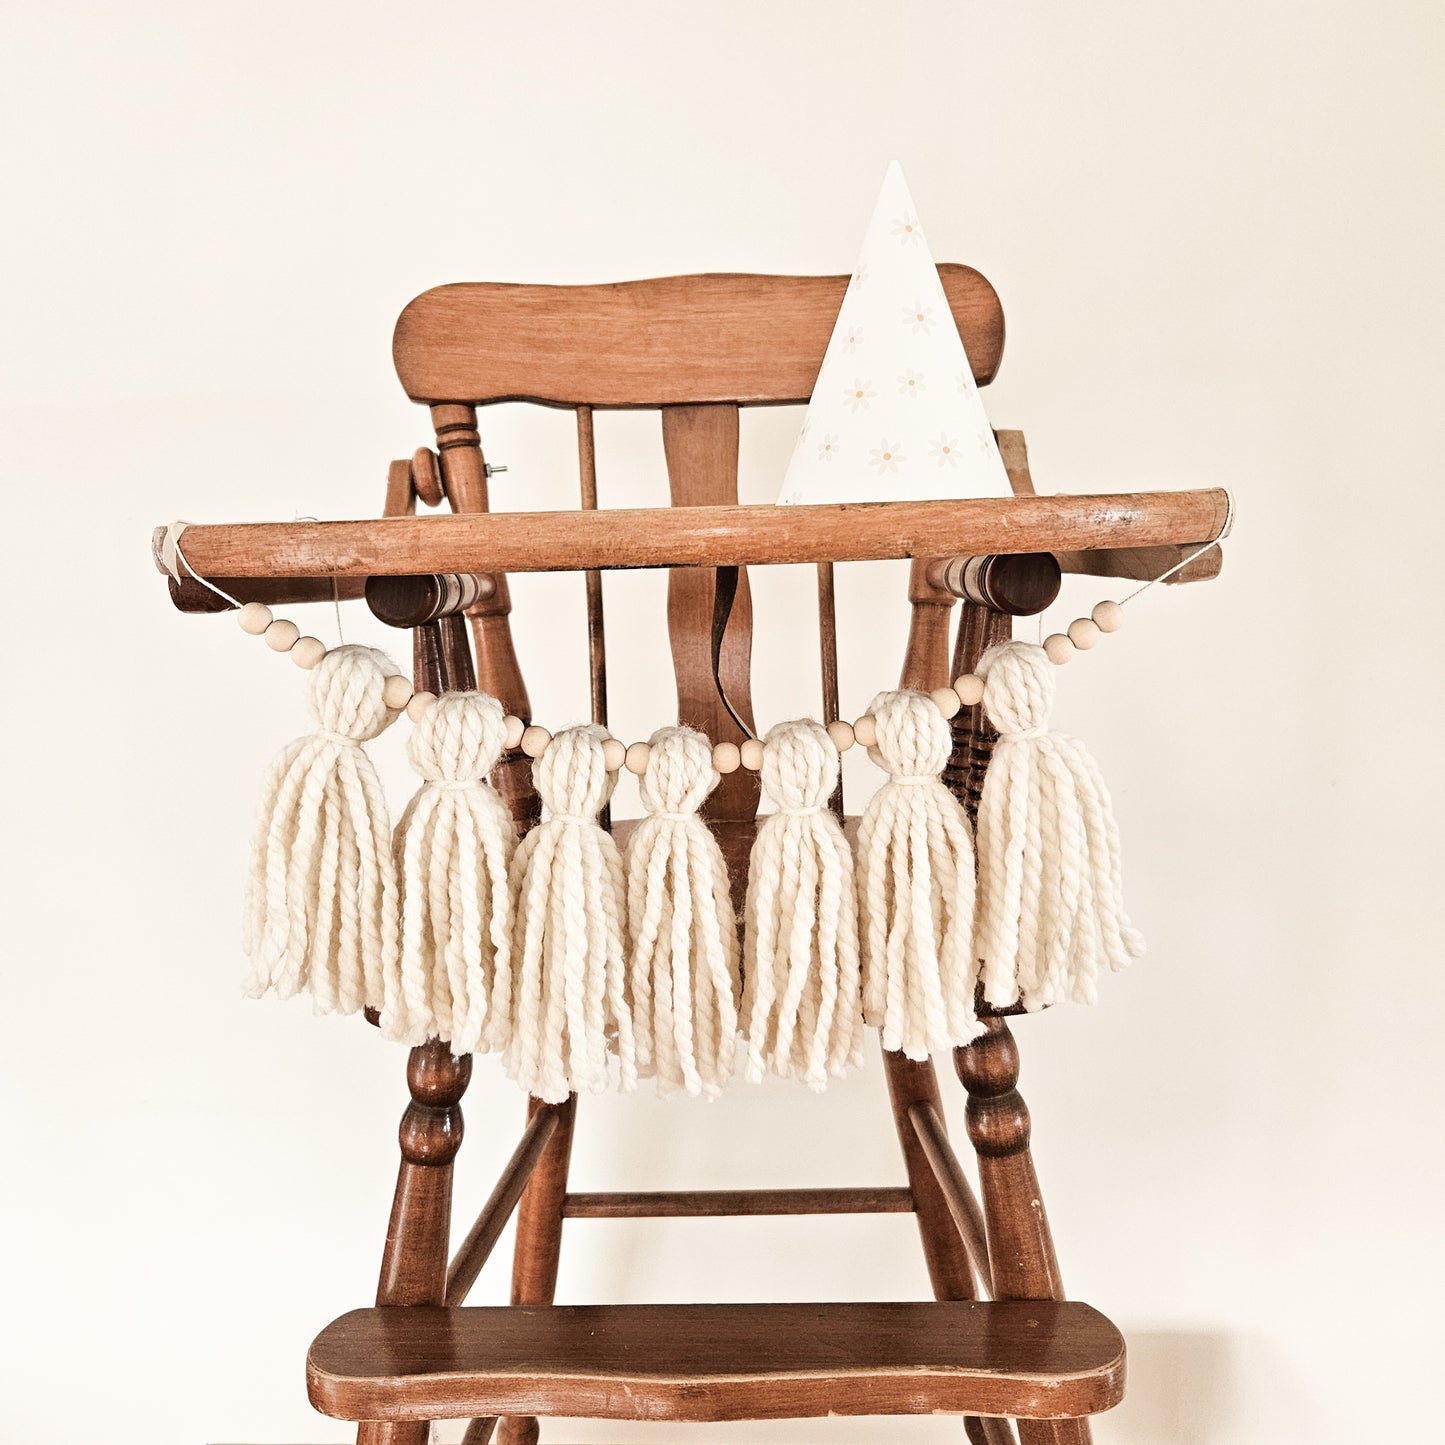 Guirlande de pompons & billes de bois pour chaise haute / couleur crème